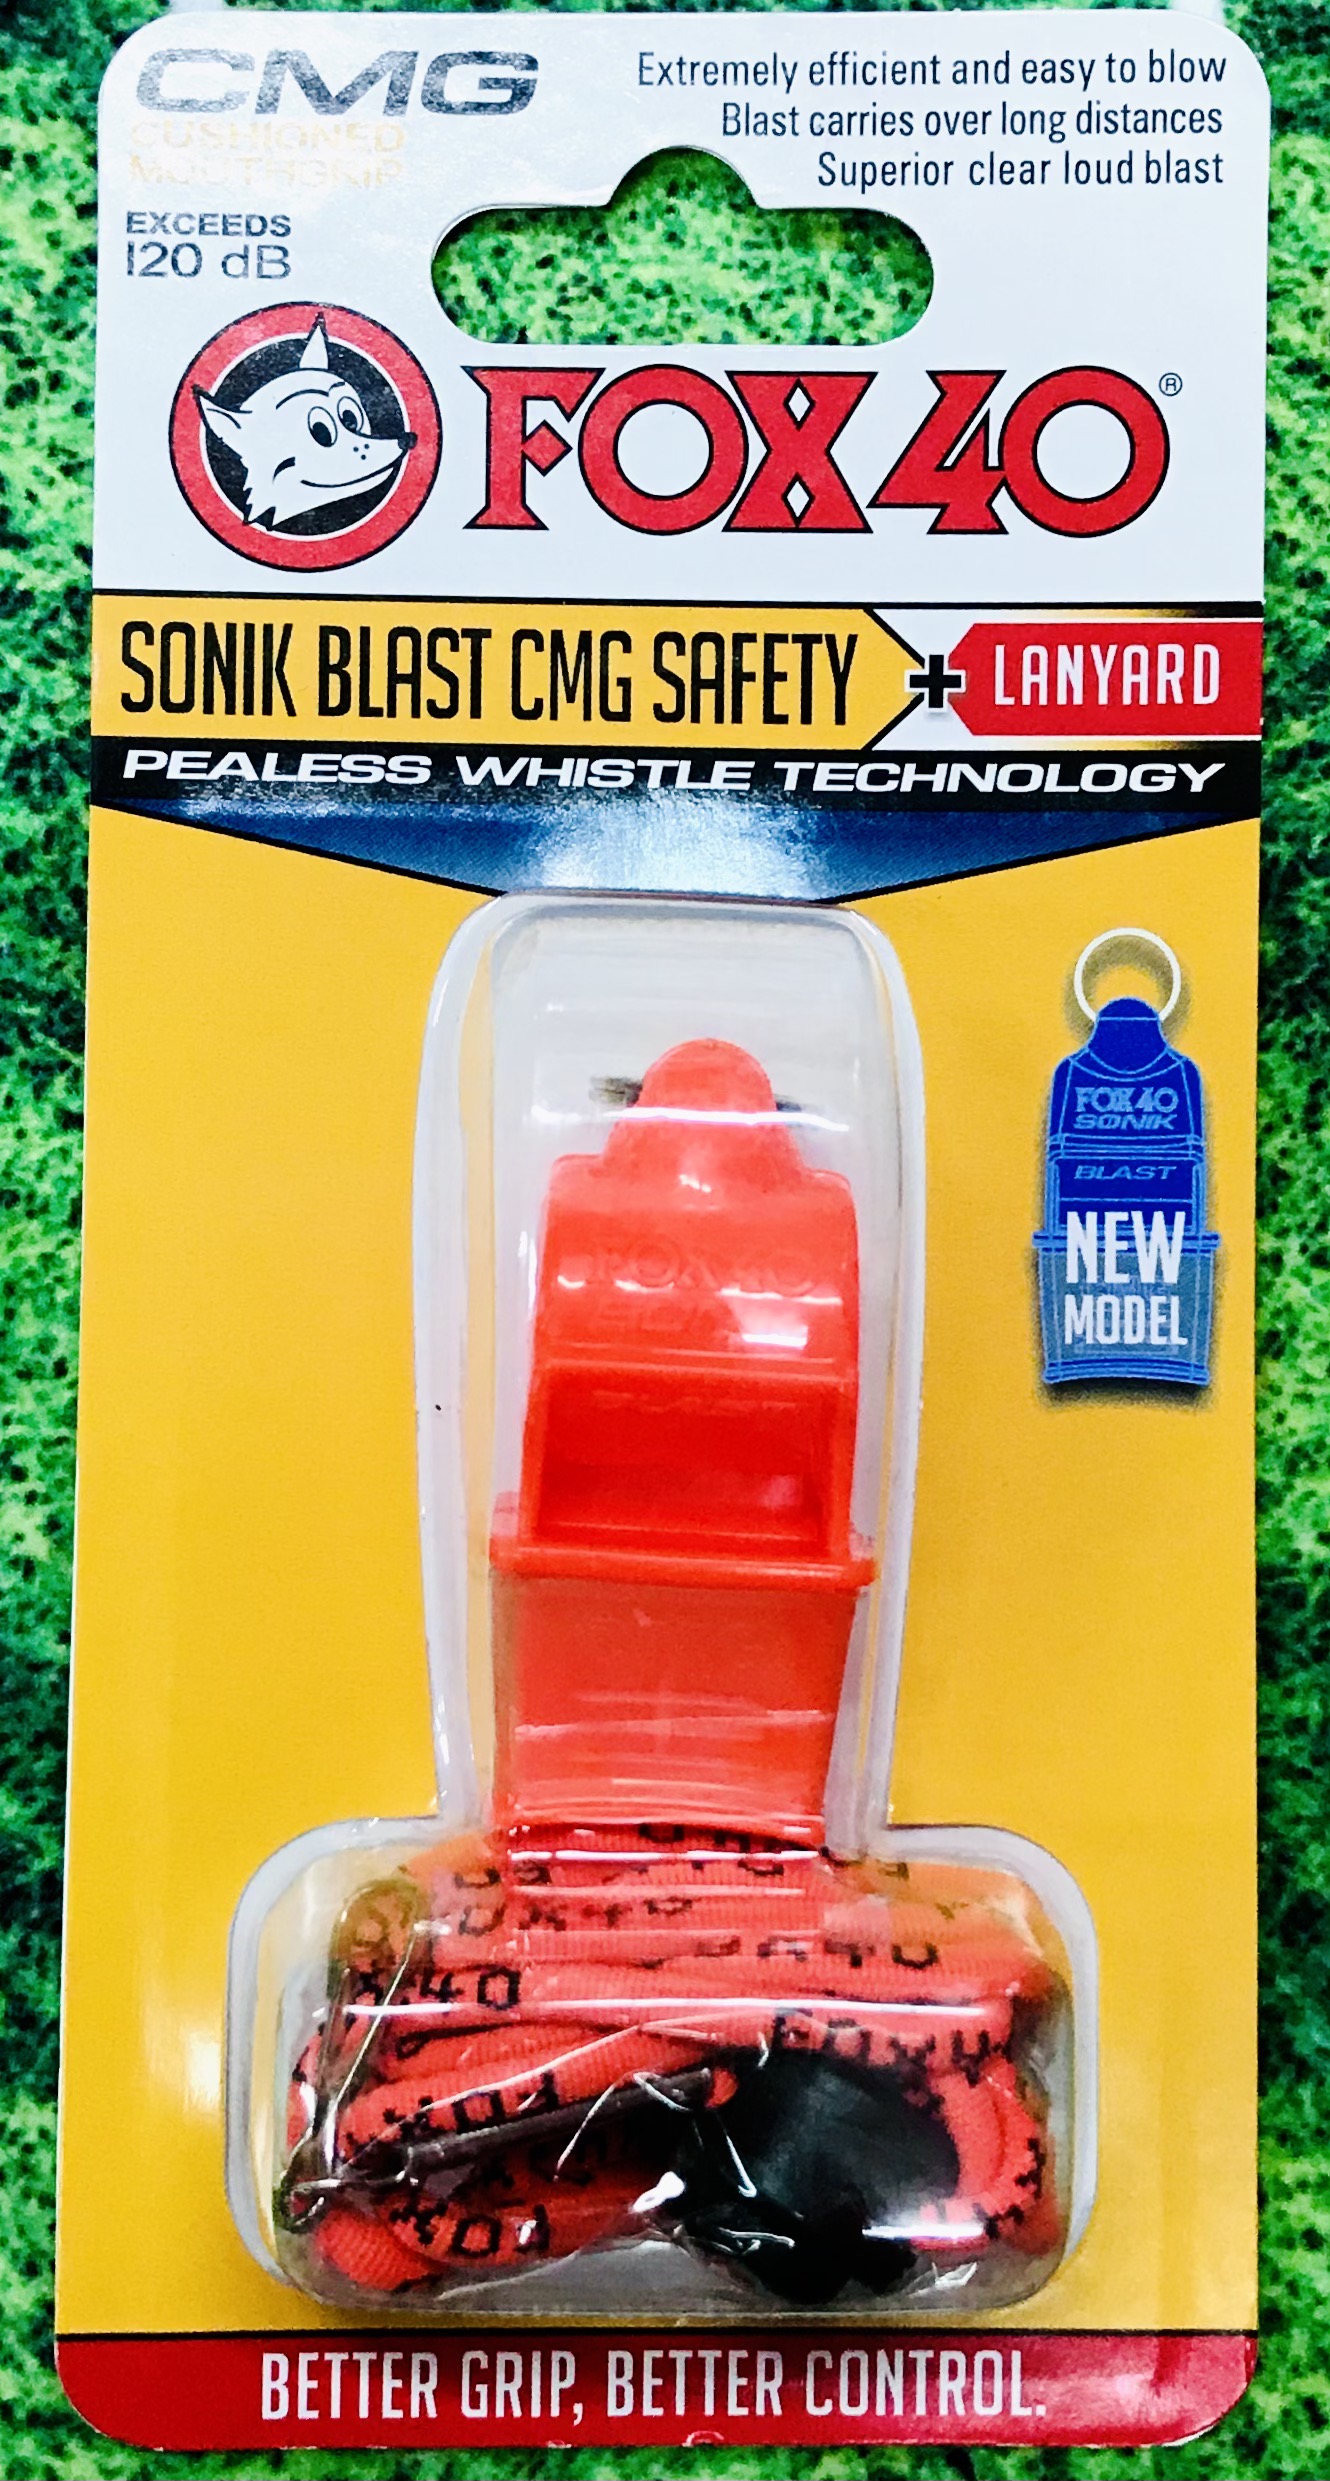 FOX นกหวีดฟอกซ์ รุ่น Sonik Blast CMG มีเสริมเทอร์โมพลาสติกที่บริเวณจุดเป่าเพื่อช่วยป้องกันฟัน + แถมฟรีสายคล้องคอ